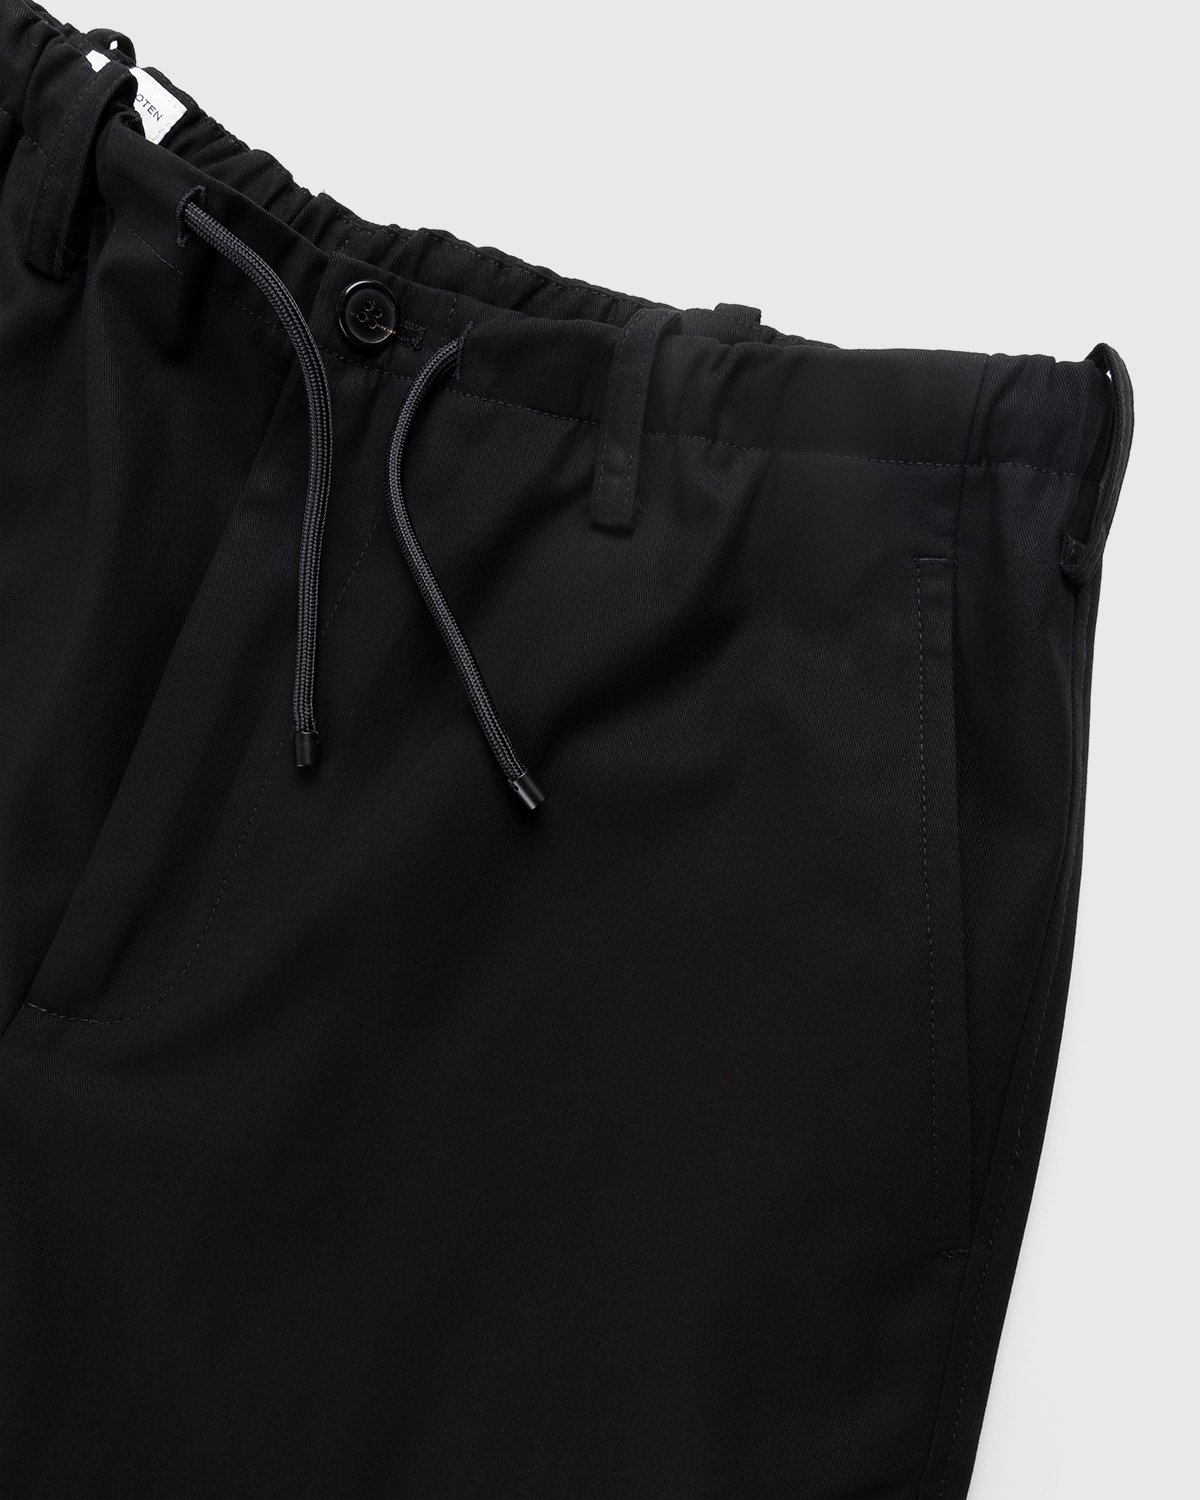 Dries van Noten - Penny Pants Black - Clothing - Black - Image 5